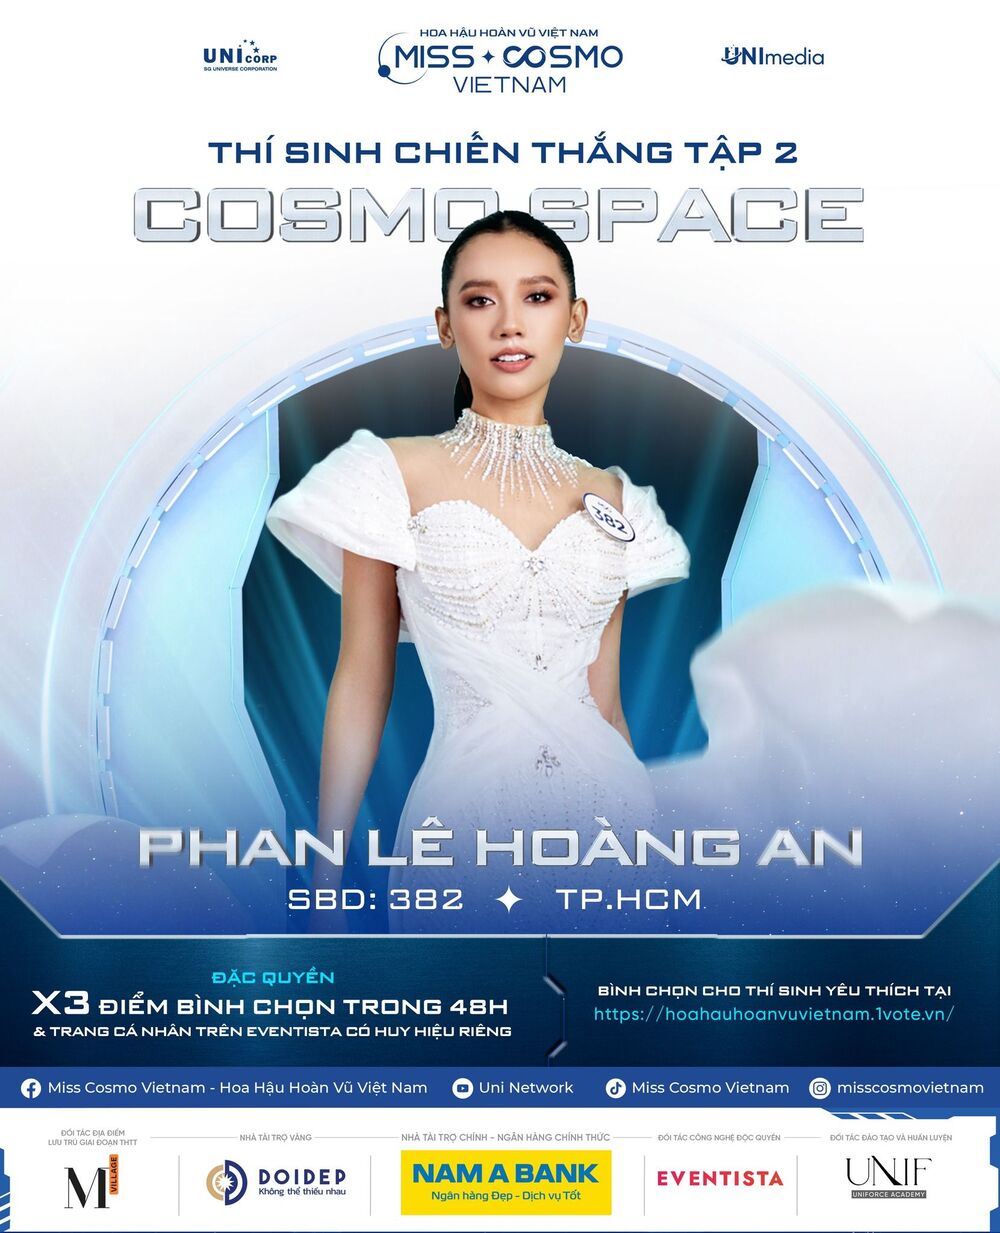 Vừa chiến thắng tập 2 'Tôi là Hoa hậu Hoàn vũ Việt Nam', Phan Lê Hoàng An tiếp tục giành thành tích bất ngờ - 1